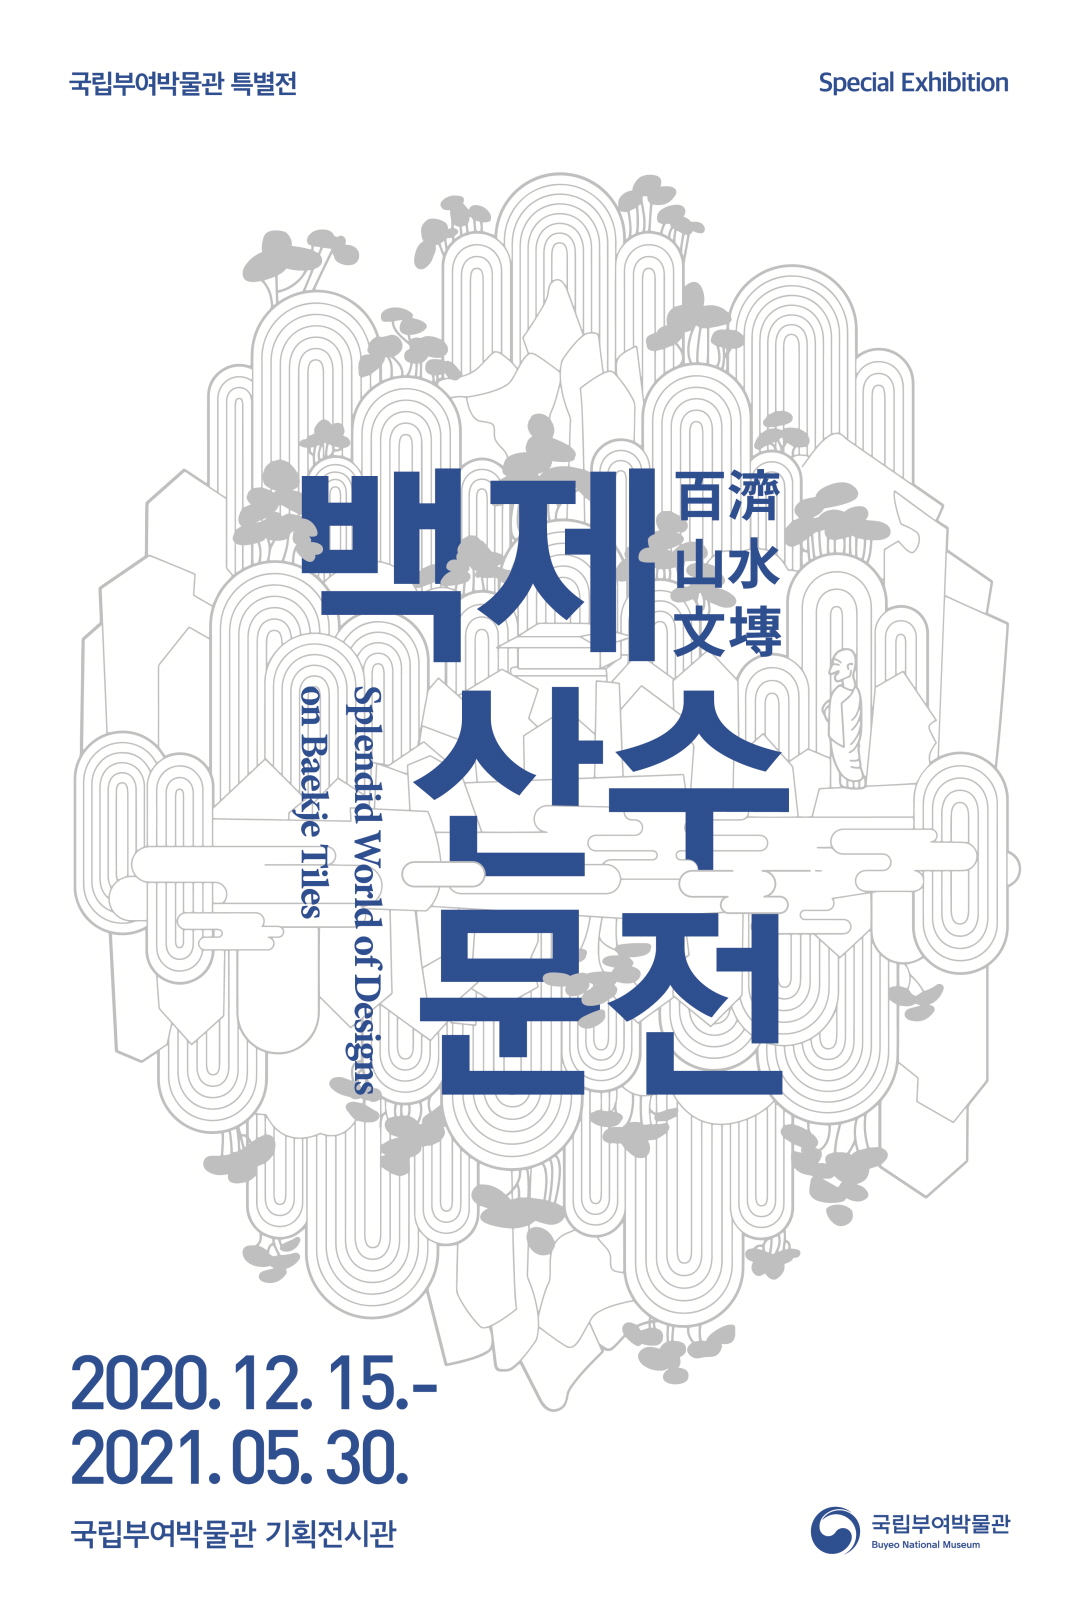 국립부여박물관 특별전
Special Exhibition
百濟山水文博
백제산수문전
Splendid World of Designs on Baekje Tiles
2020. 12. 15.- 2021.05.30.
국립부여박물관 기획전시관
국립부여박물관 Buyeo National Museum